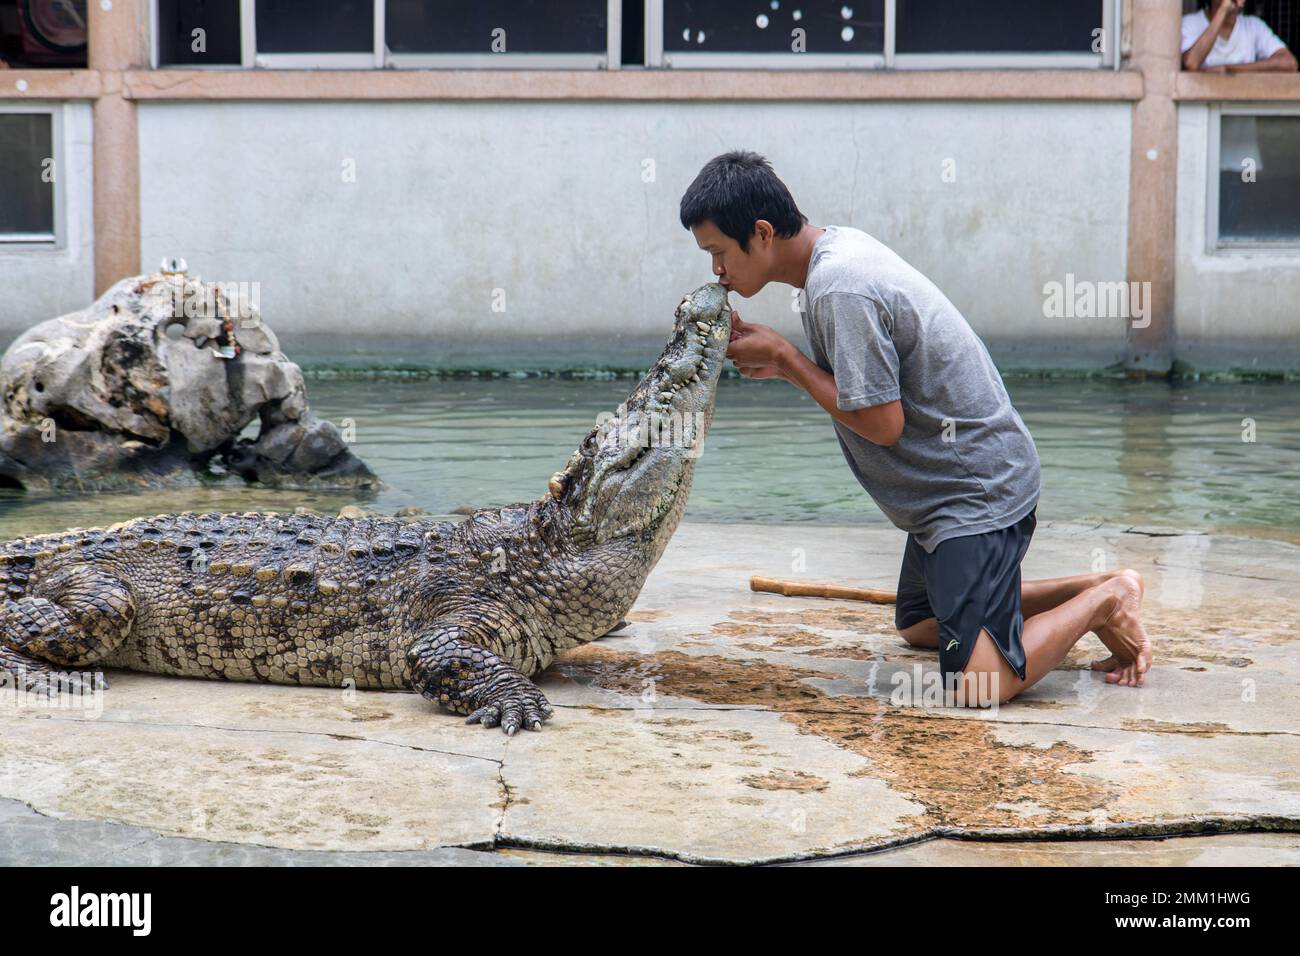 SAMUT PRAKAN, THAILAND, NOVEMBER 05 2016, gefährliche Vorstellung mit wilden Tieren. Der Bändiger küsst die Krokodil-Schnauze. Stockfoto